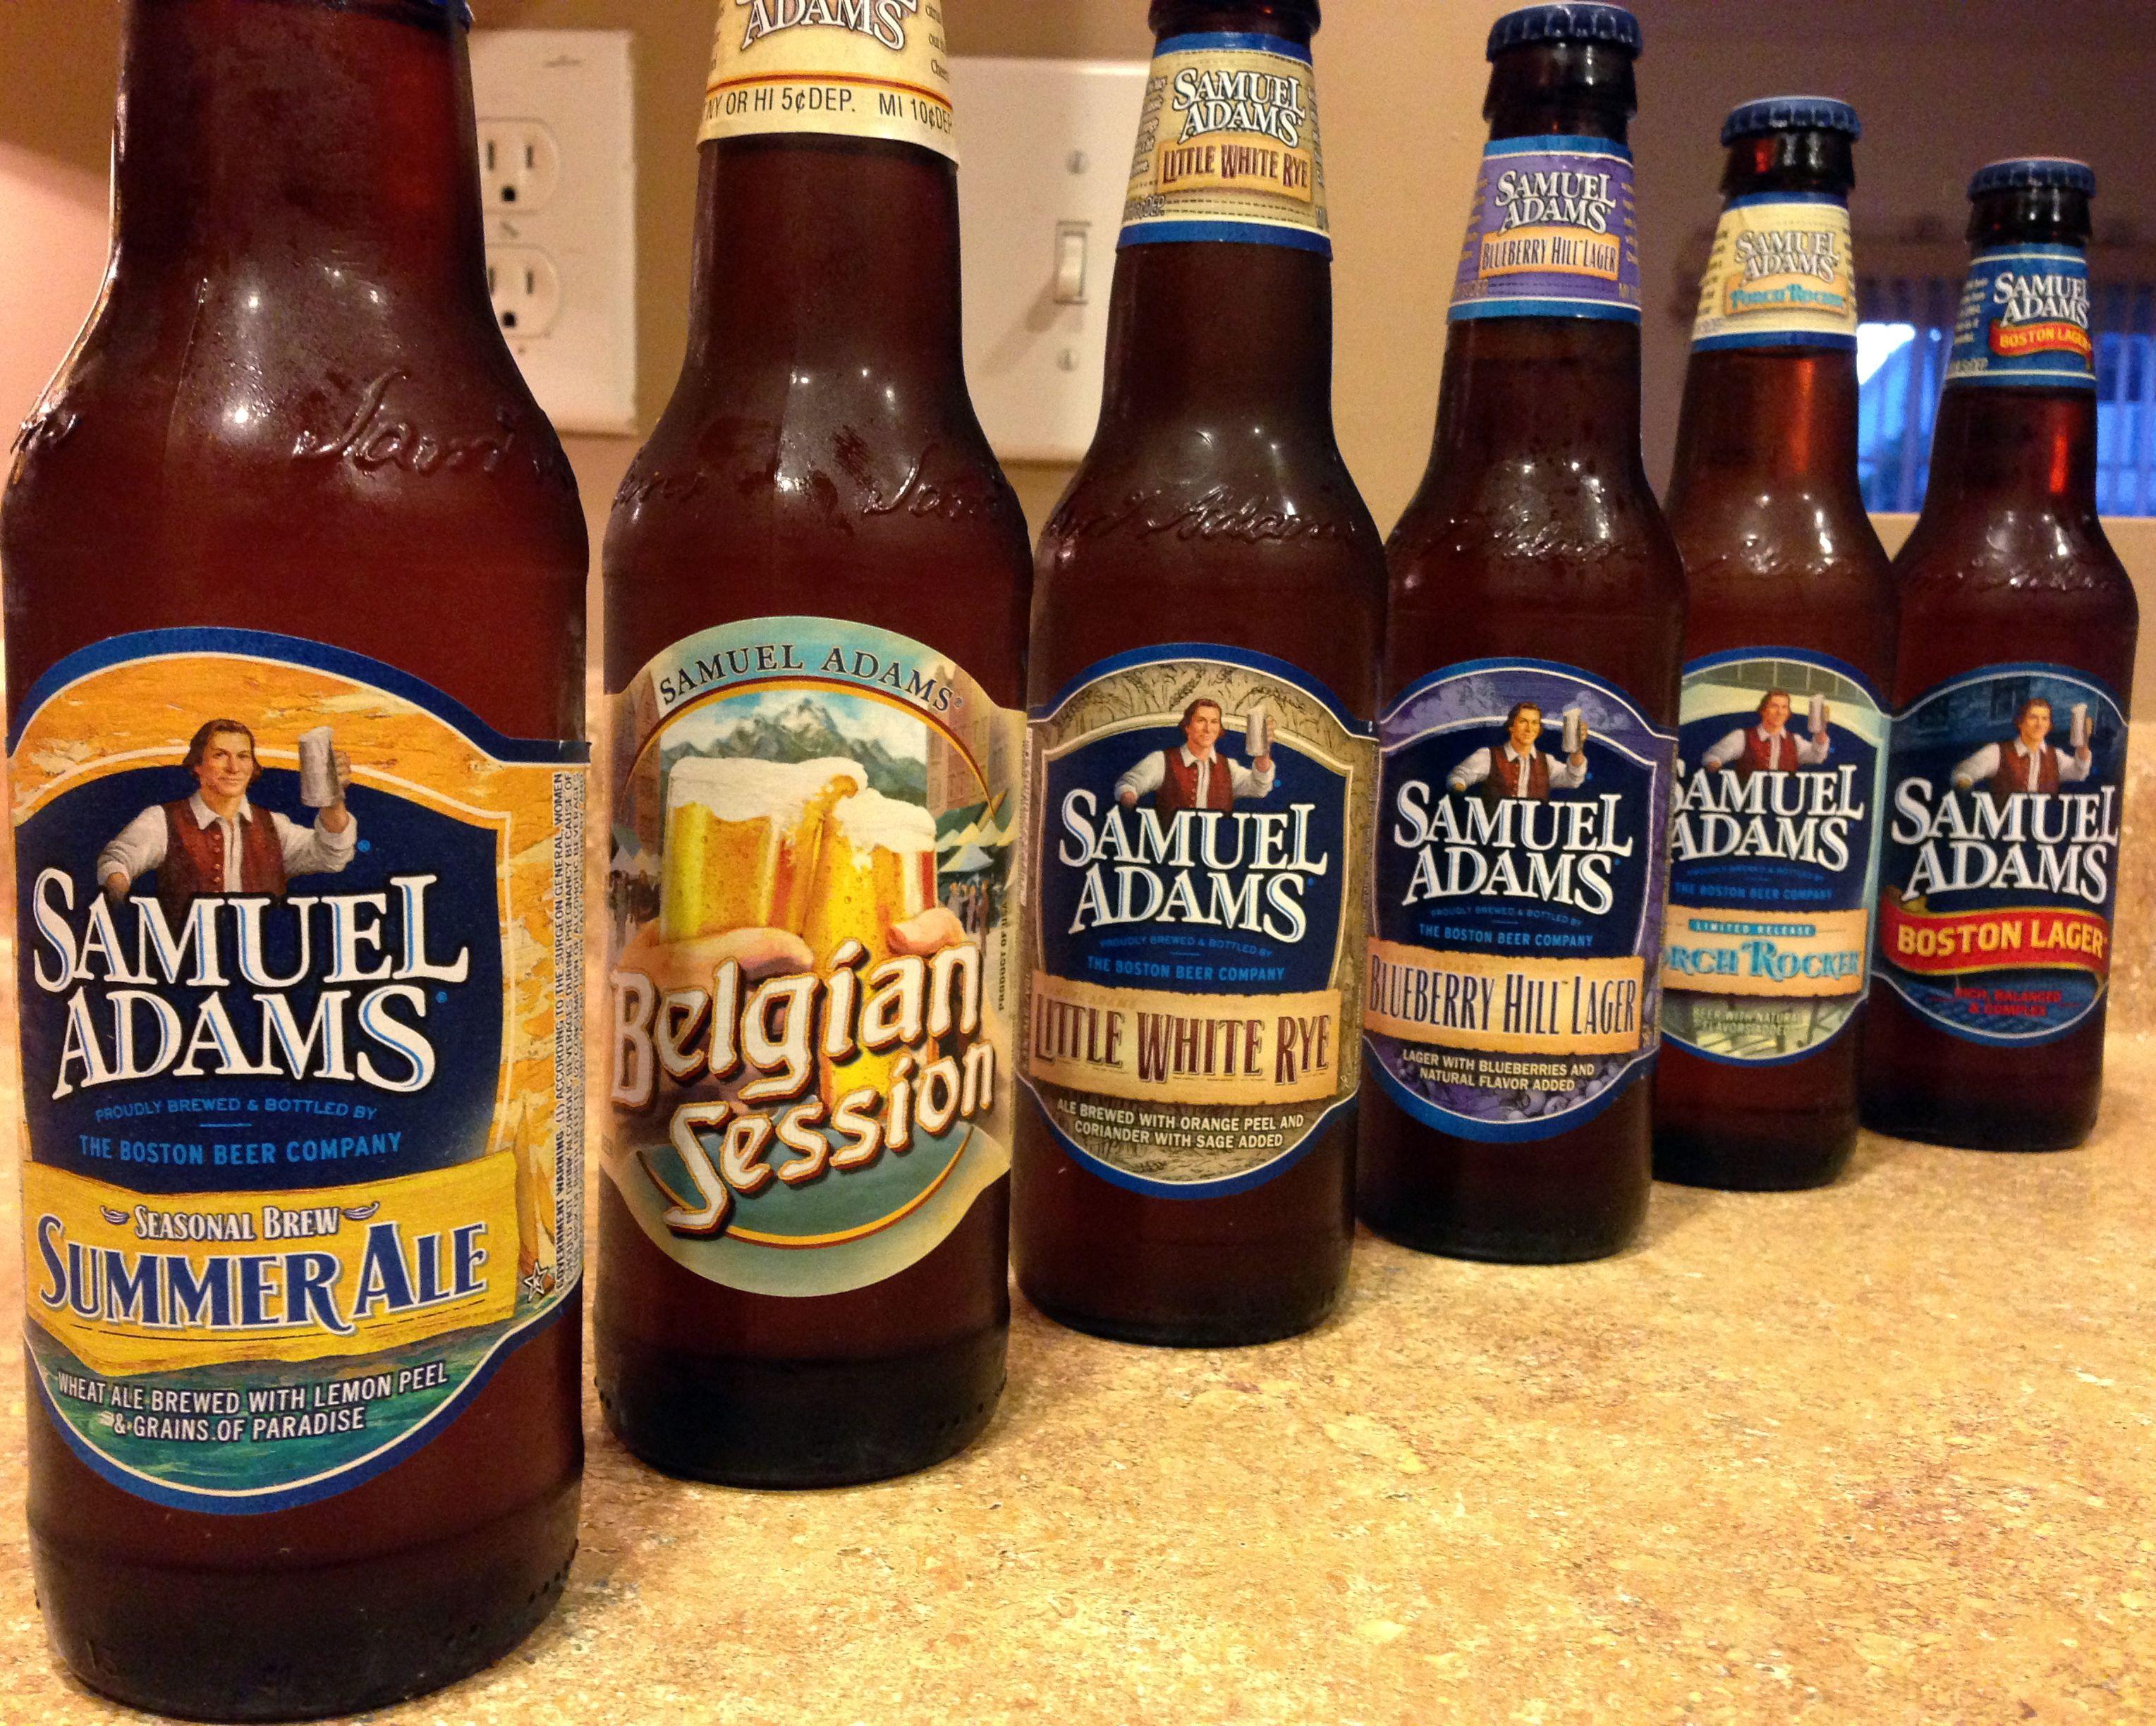 Samuel Adams Seasonal Beer Logo - Time to Sit Back and Unwind: Summertime with Sam Adams